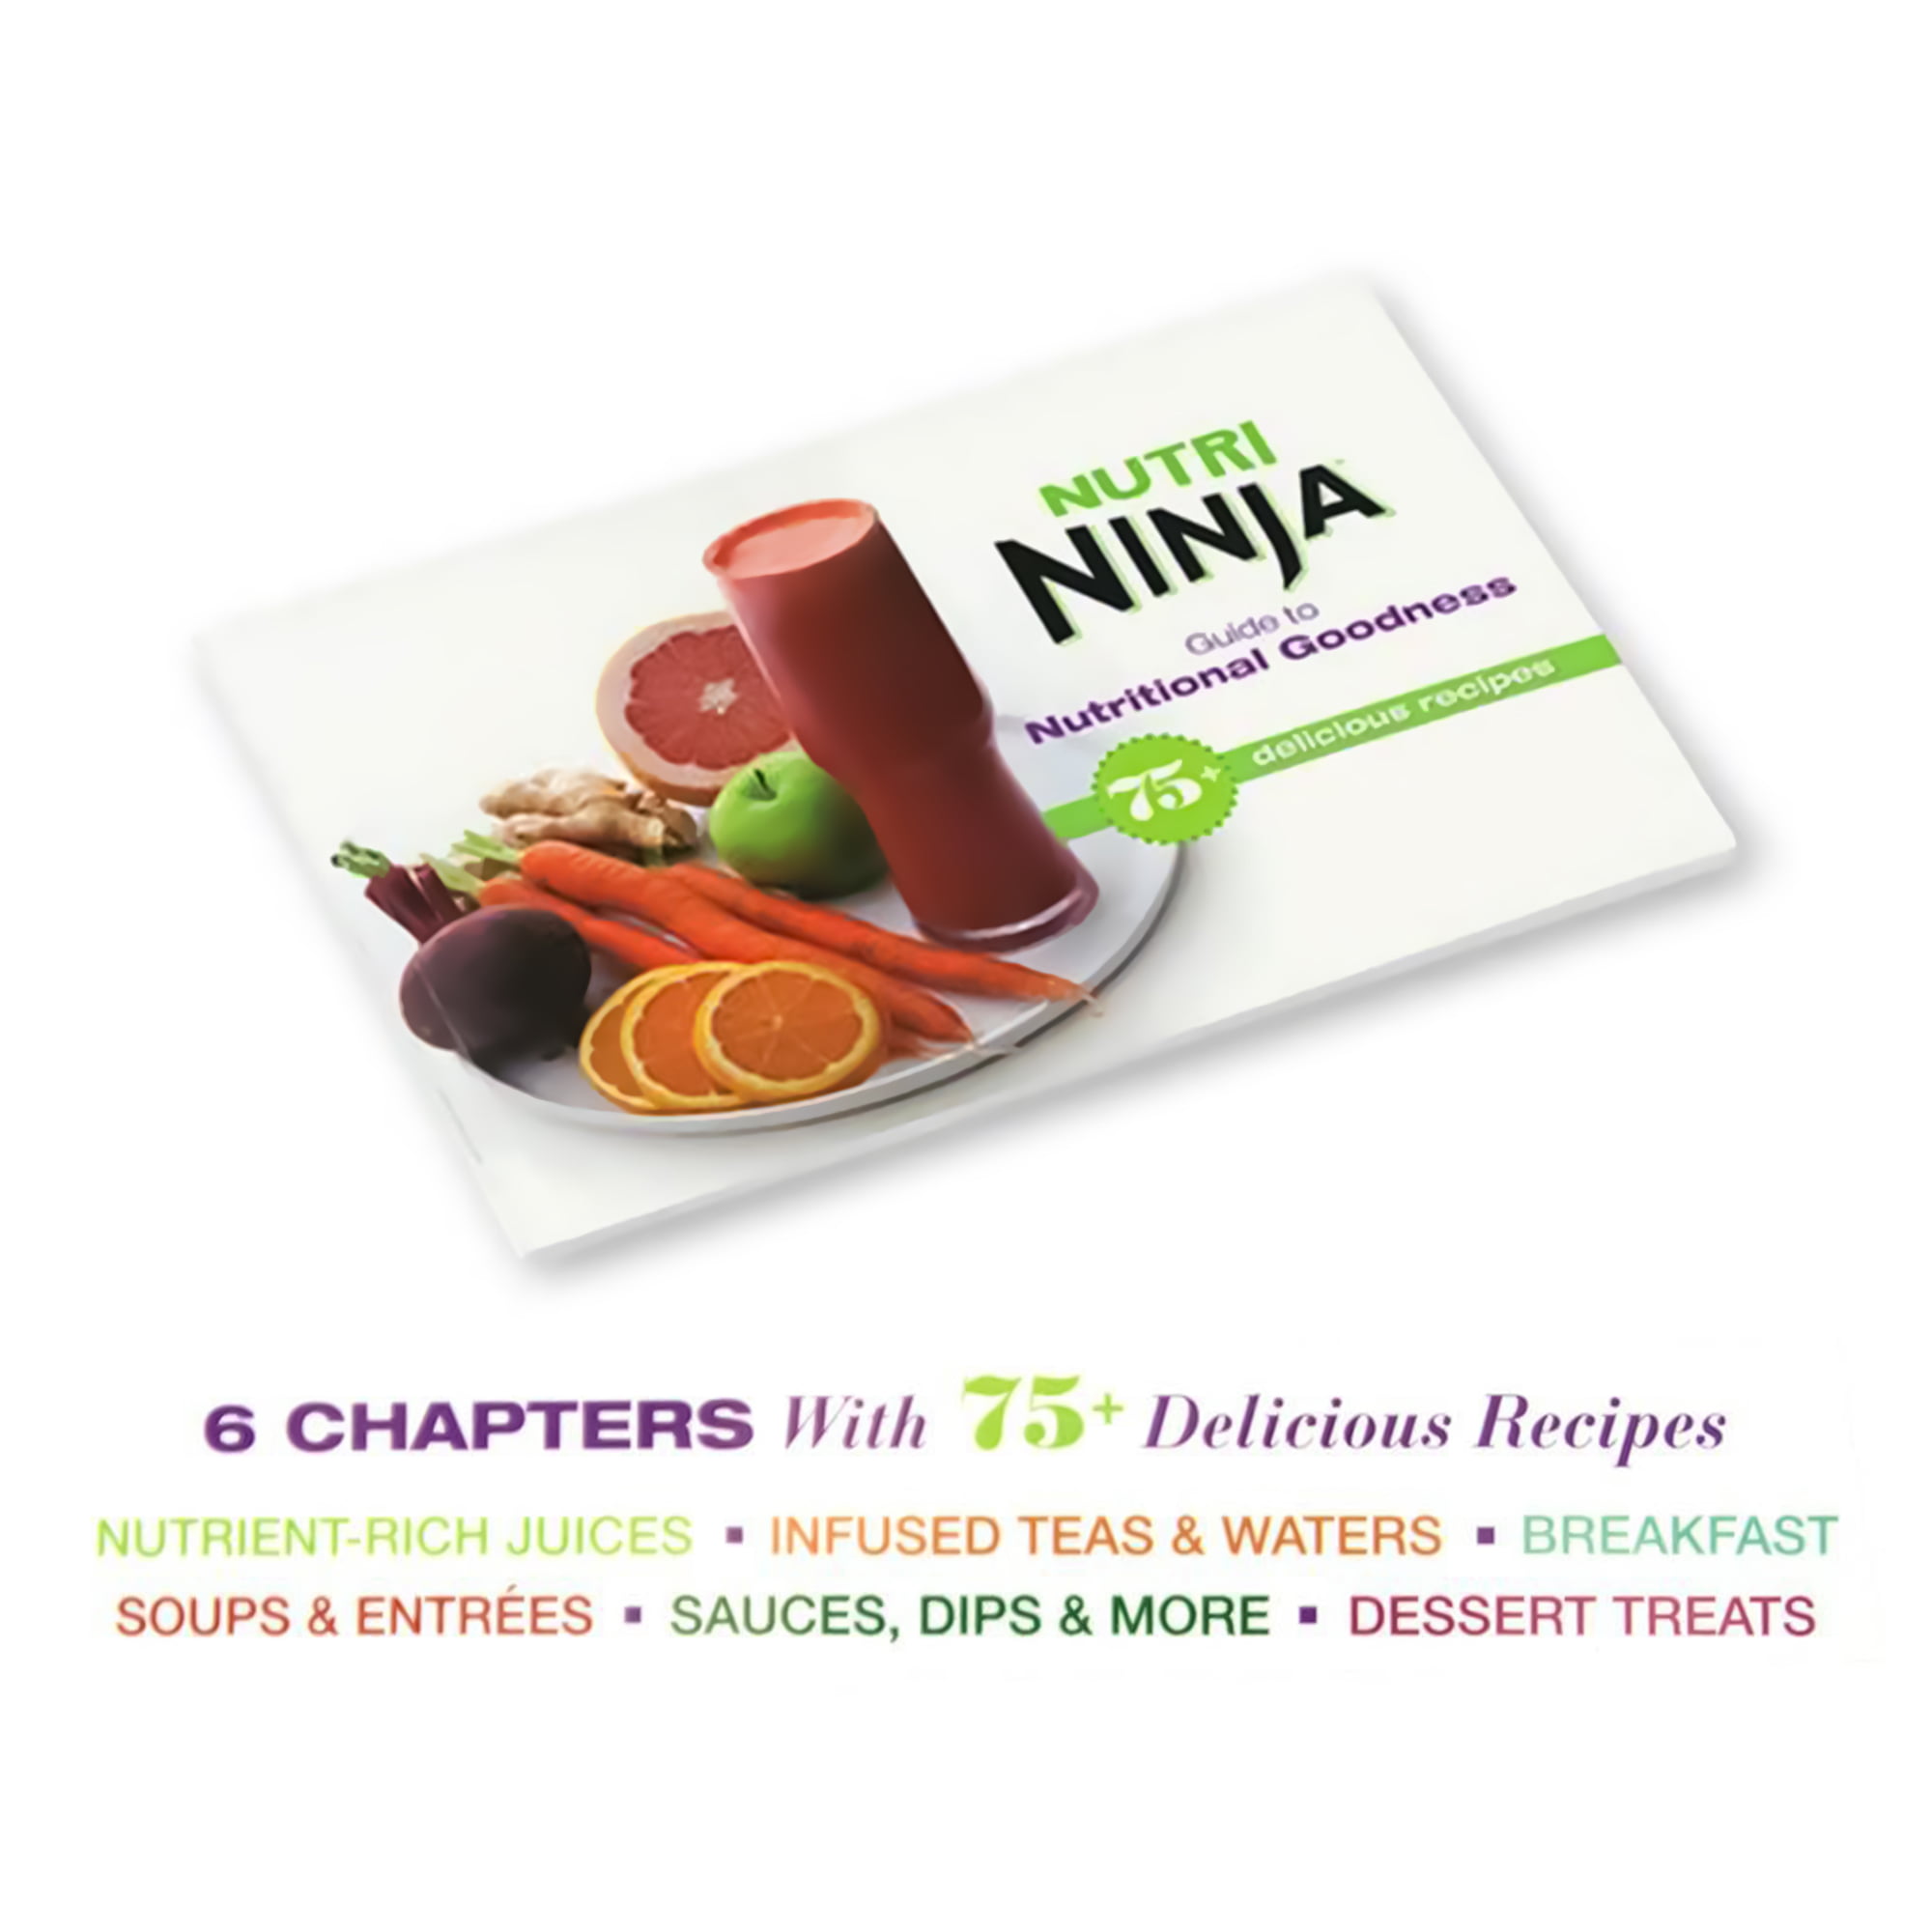 Fruit Smoothie Recipe by Nutri Ninja®